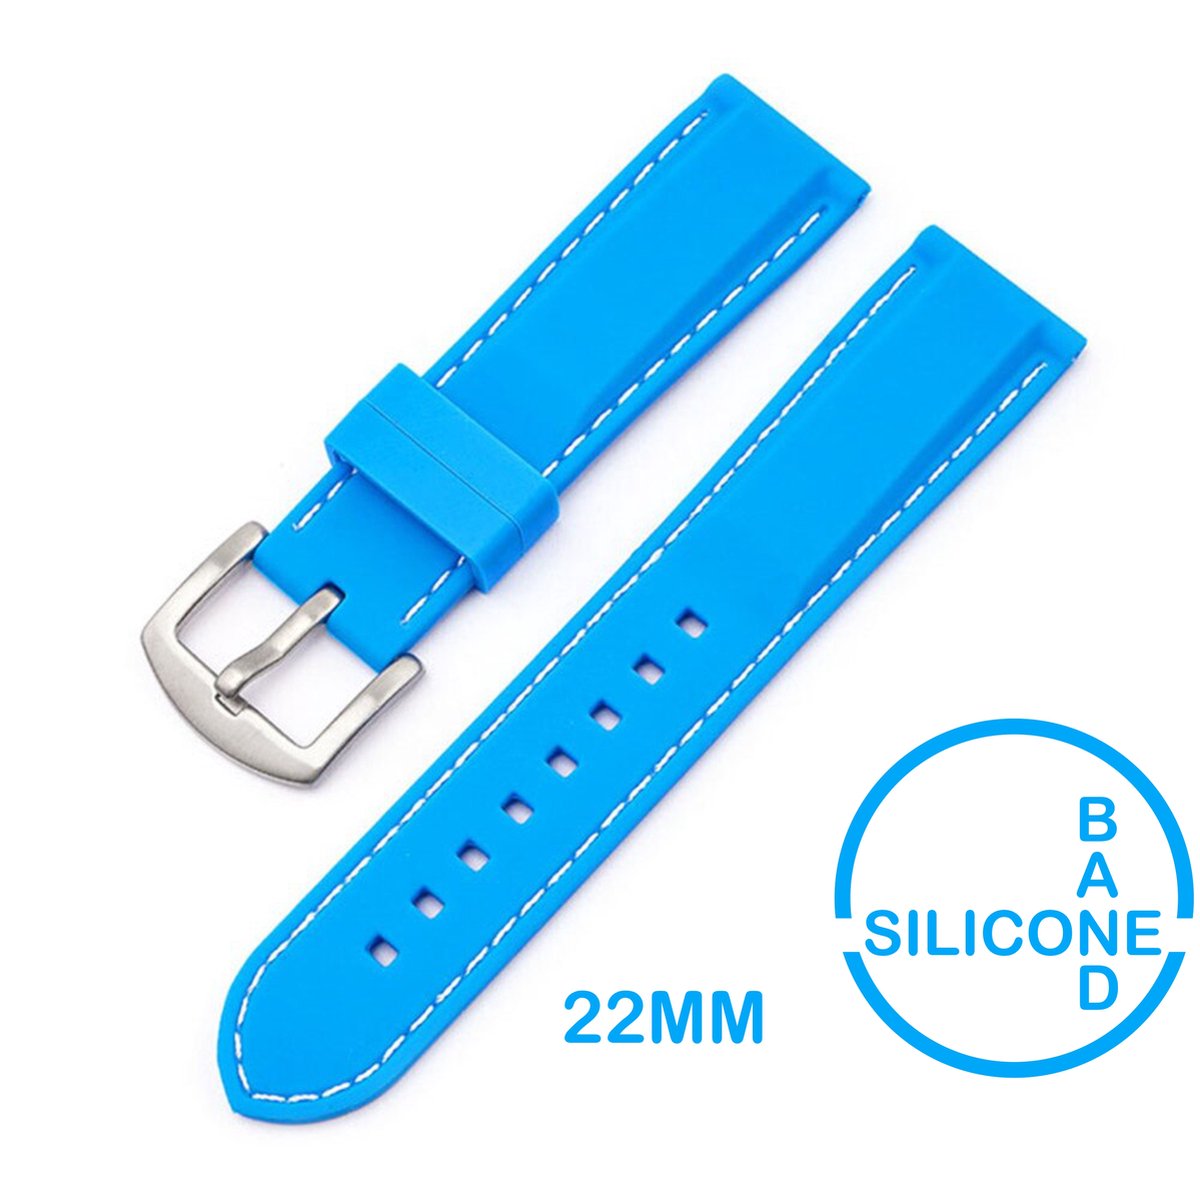 22mm Rubber Siliconen horlogeband Lichtblauw met witte stiksels passend op o.a Casio Seiko Citizen en alle andere merken - 22 mm Bandje - Licht Blauw - Horlogebandje horlogeband